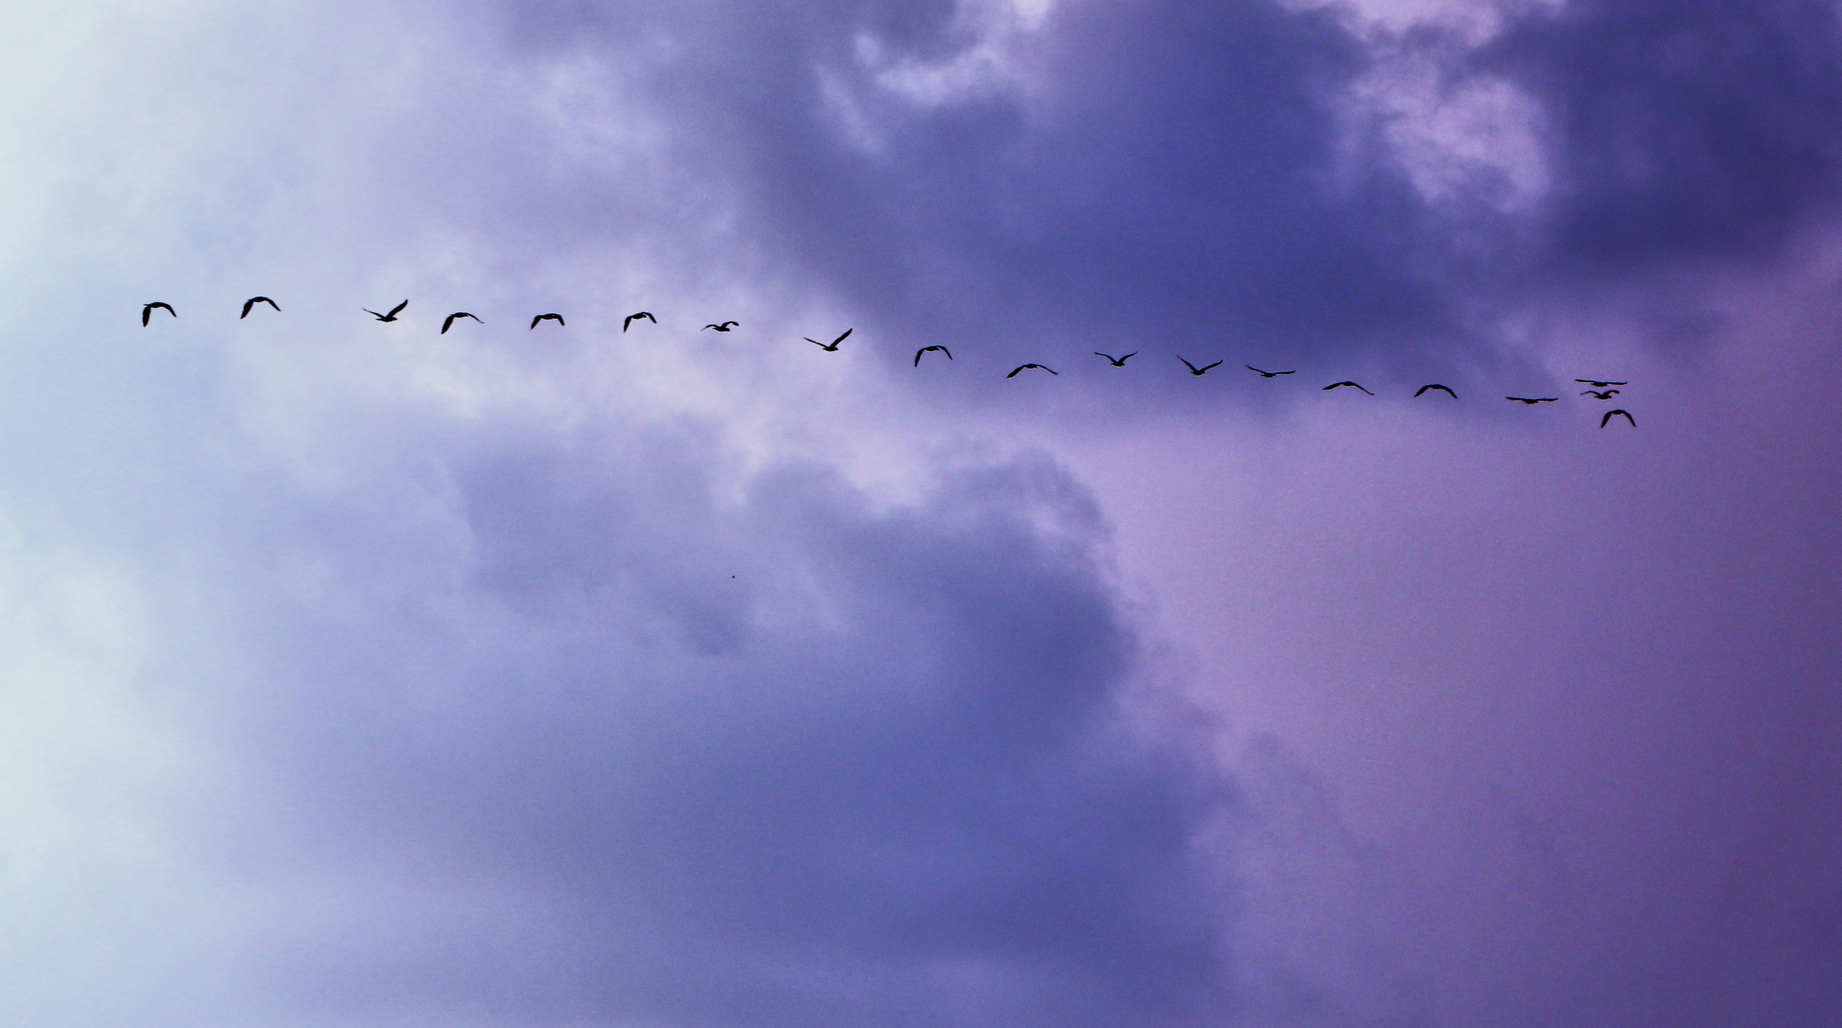 Vol d'oiseaux dans un ciel nuageux 